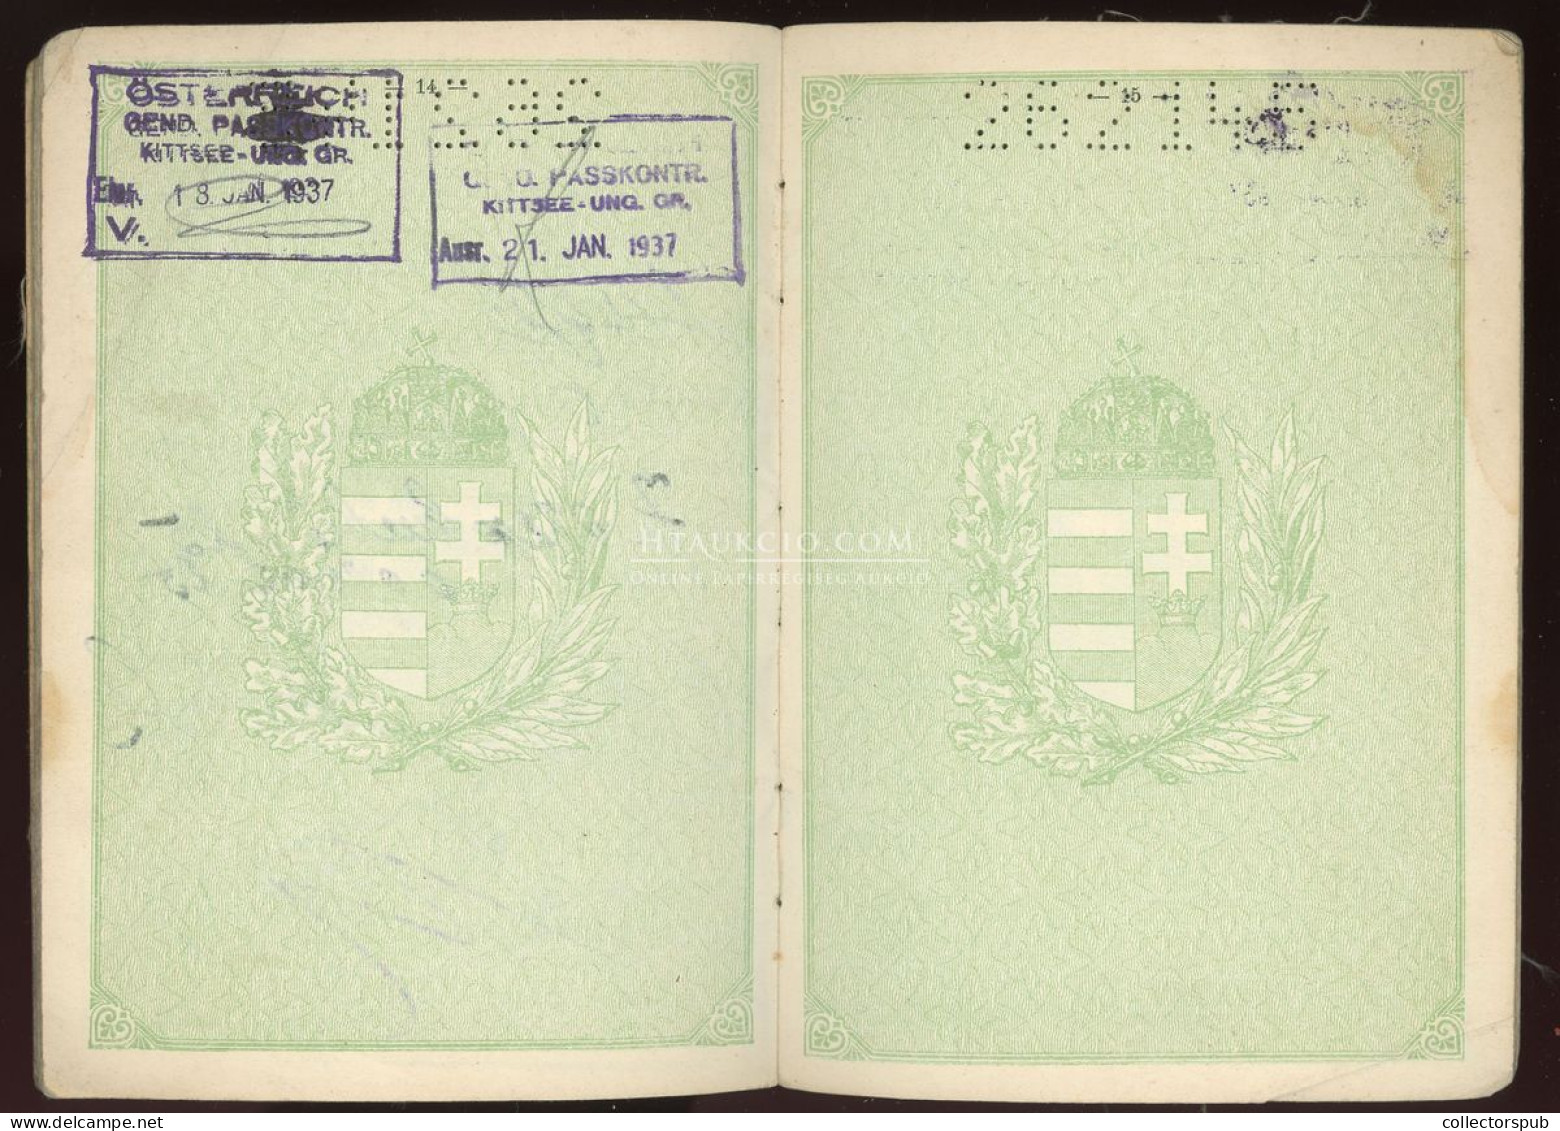 ÚTLEVÉL 1932.  Föld (Rosenfeld) Aurél újságíró, fényképes útlevele 1937-ig használva.passport